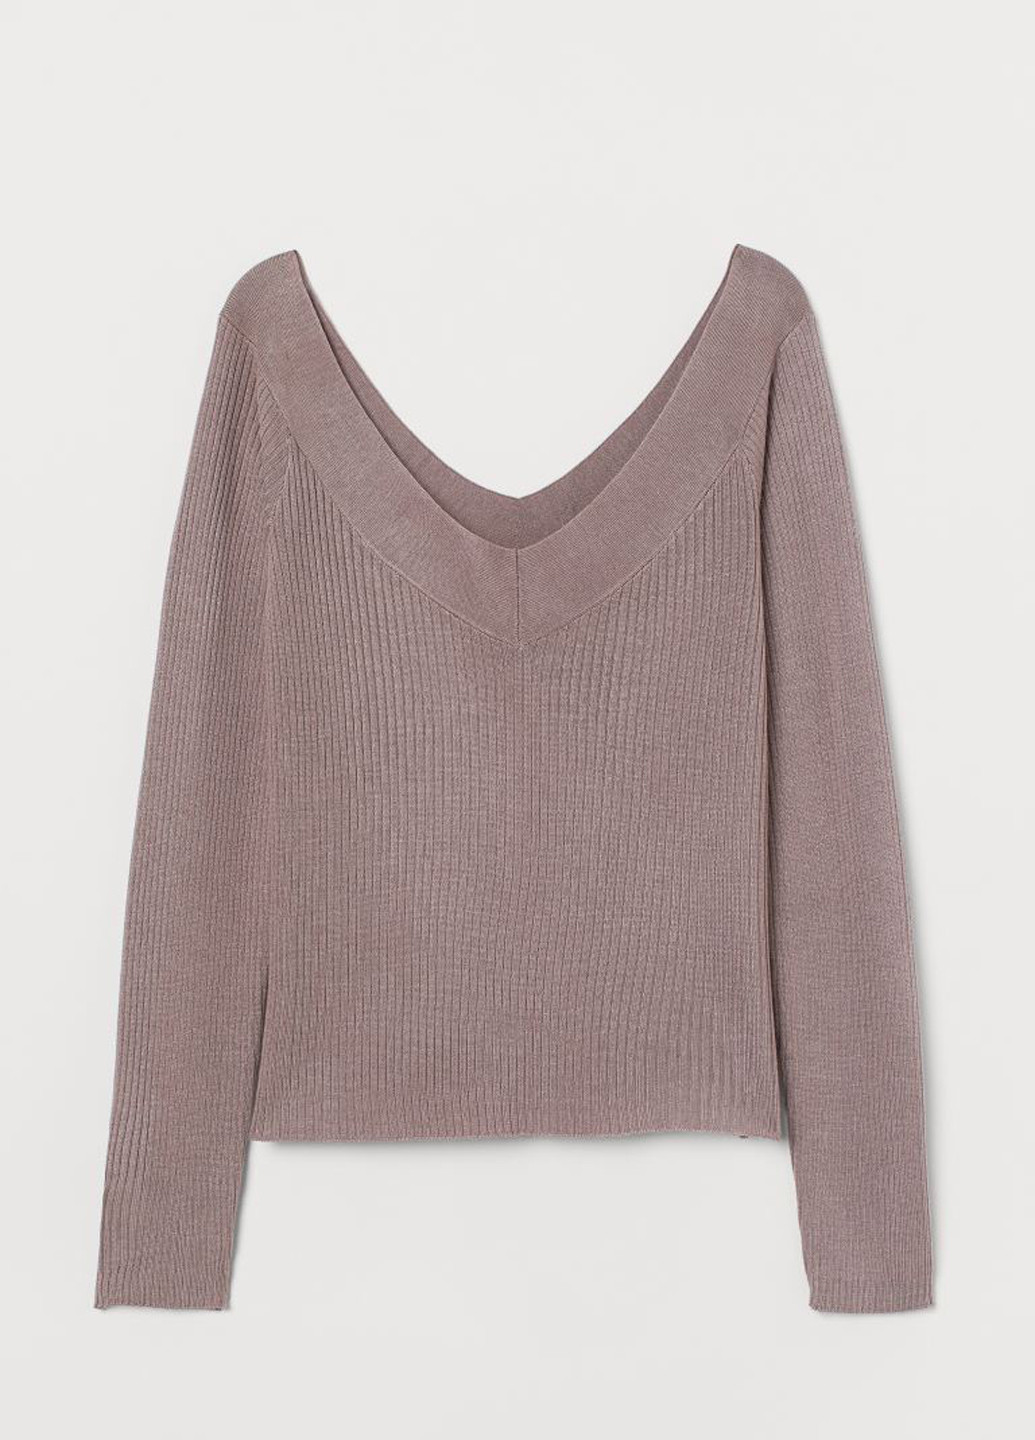 Сиреневый демисезонный пуловер пуловер H&M